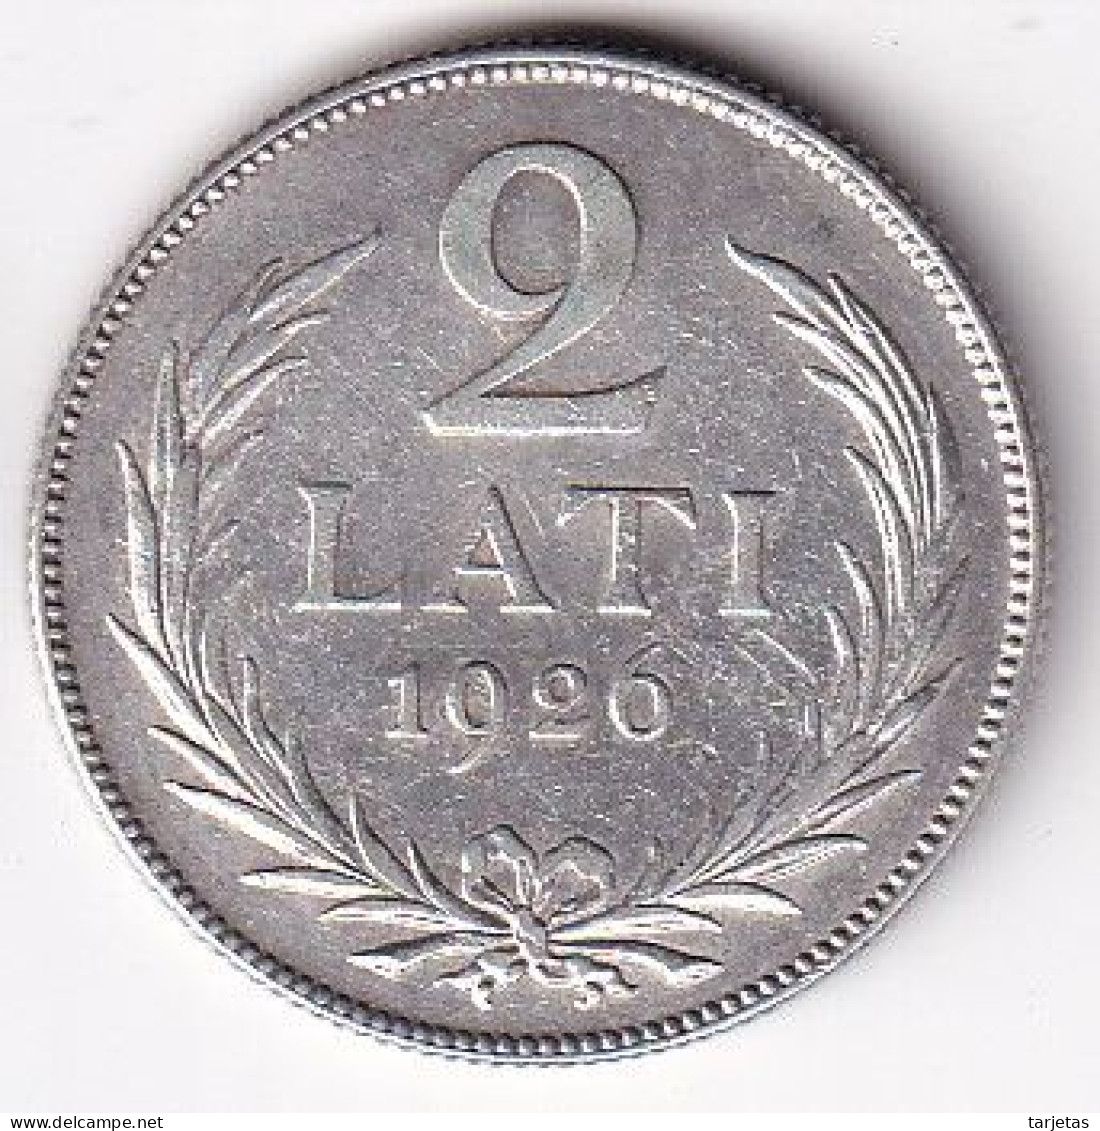 MONEDA DE PLATA DE LETONIA DE 2 LATI DEL AÑO 1926  (COIN) SILVER-ARGENT - Lettonie